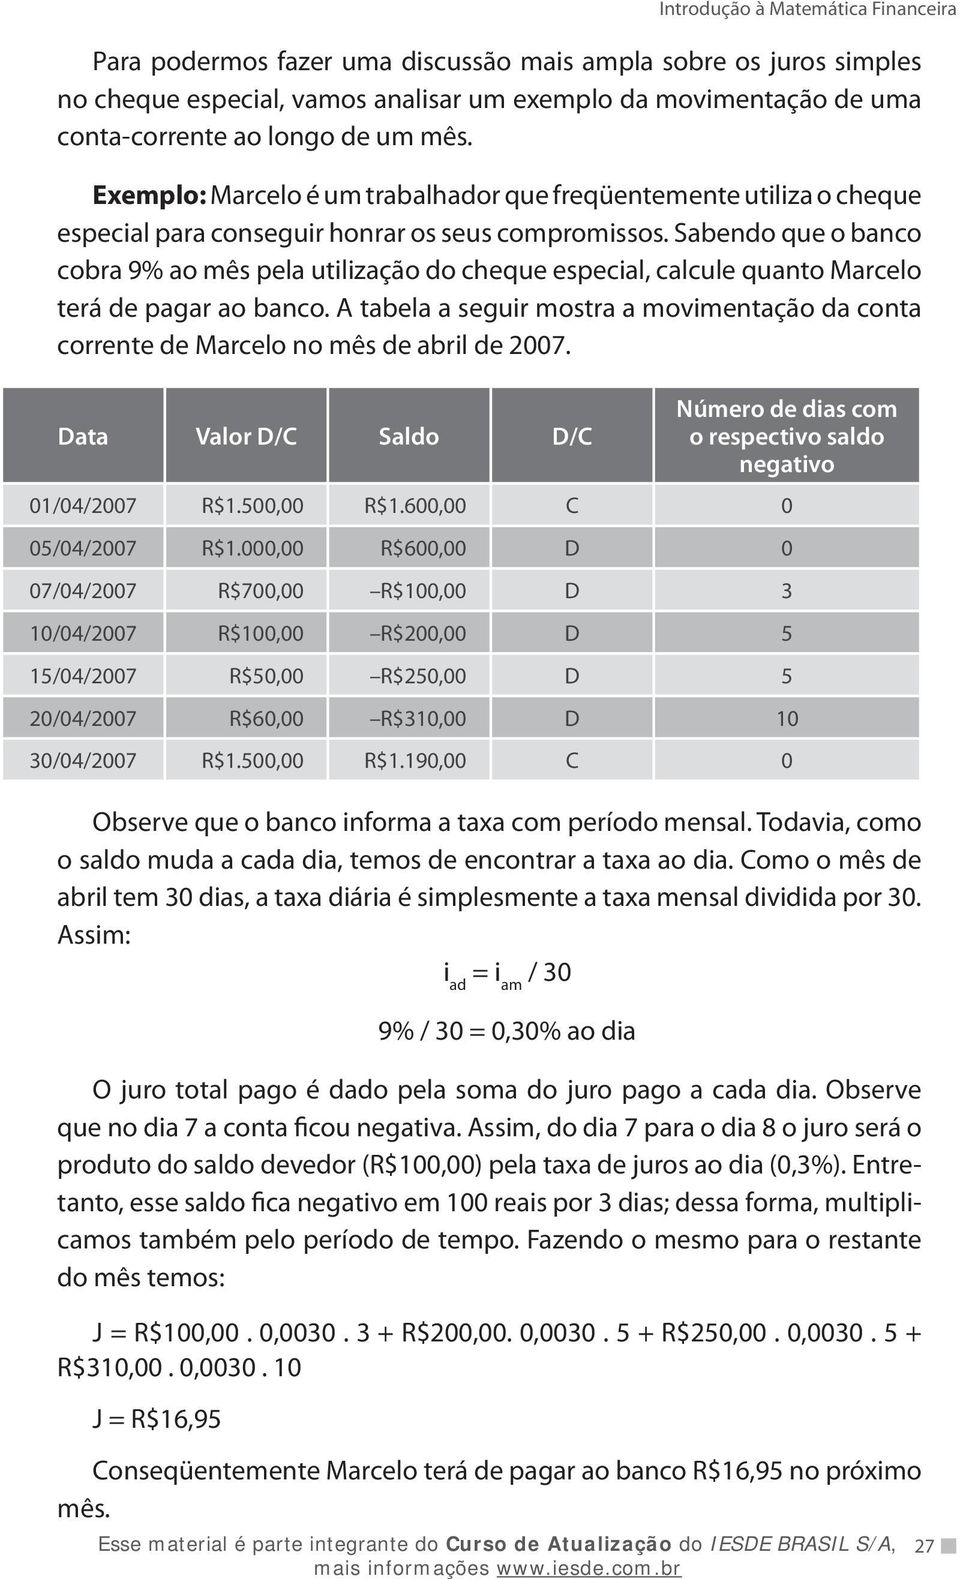 Sabendo que o banco cobra 9% ao mês pela utilização do cheque especial, calcule quanto Marcelo terá de pagar ao banco.